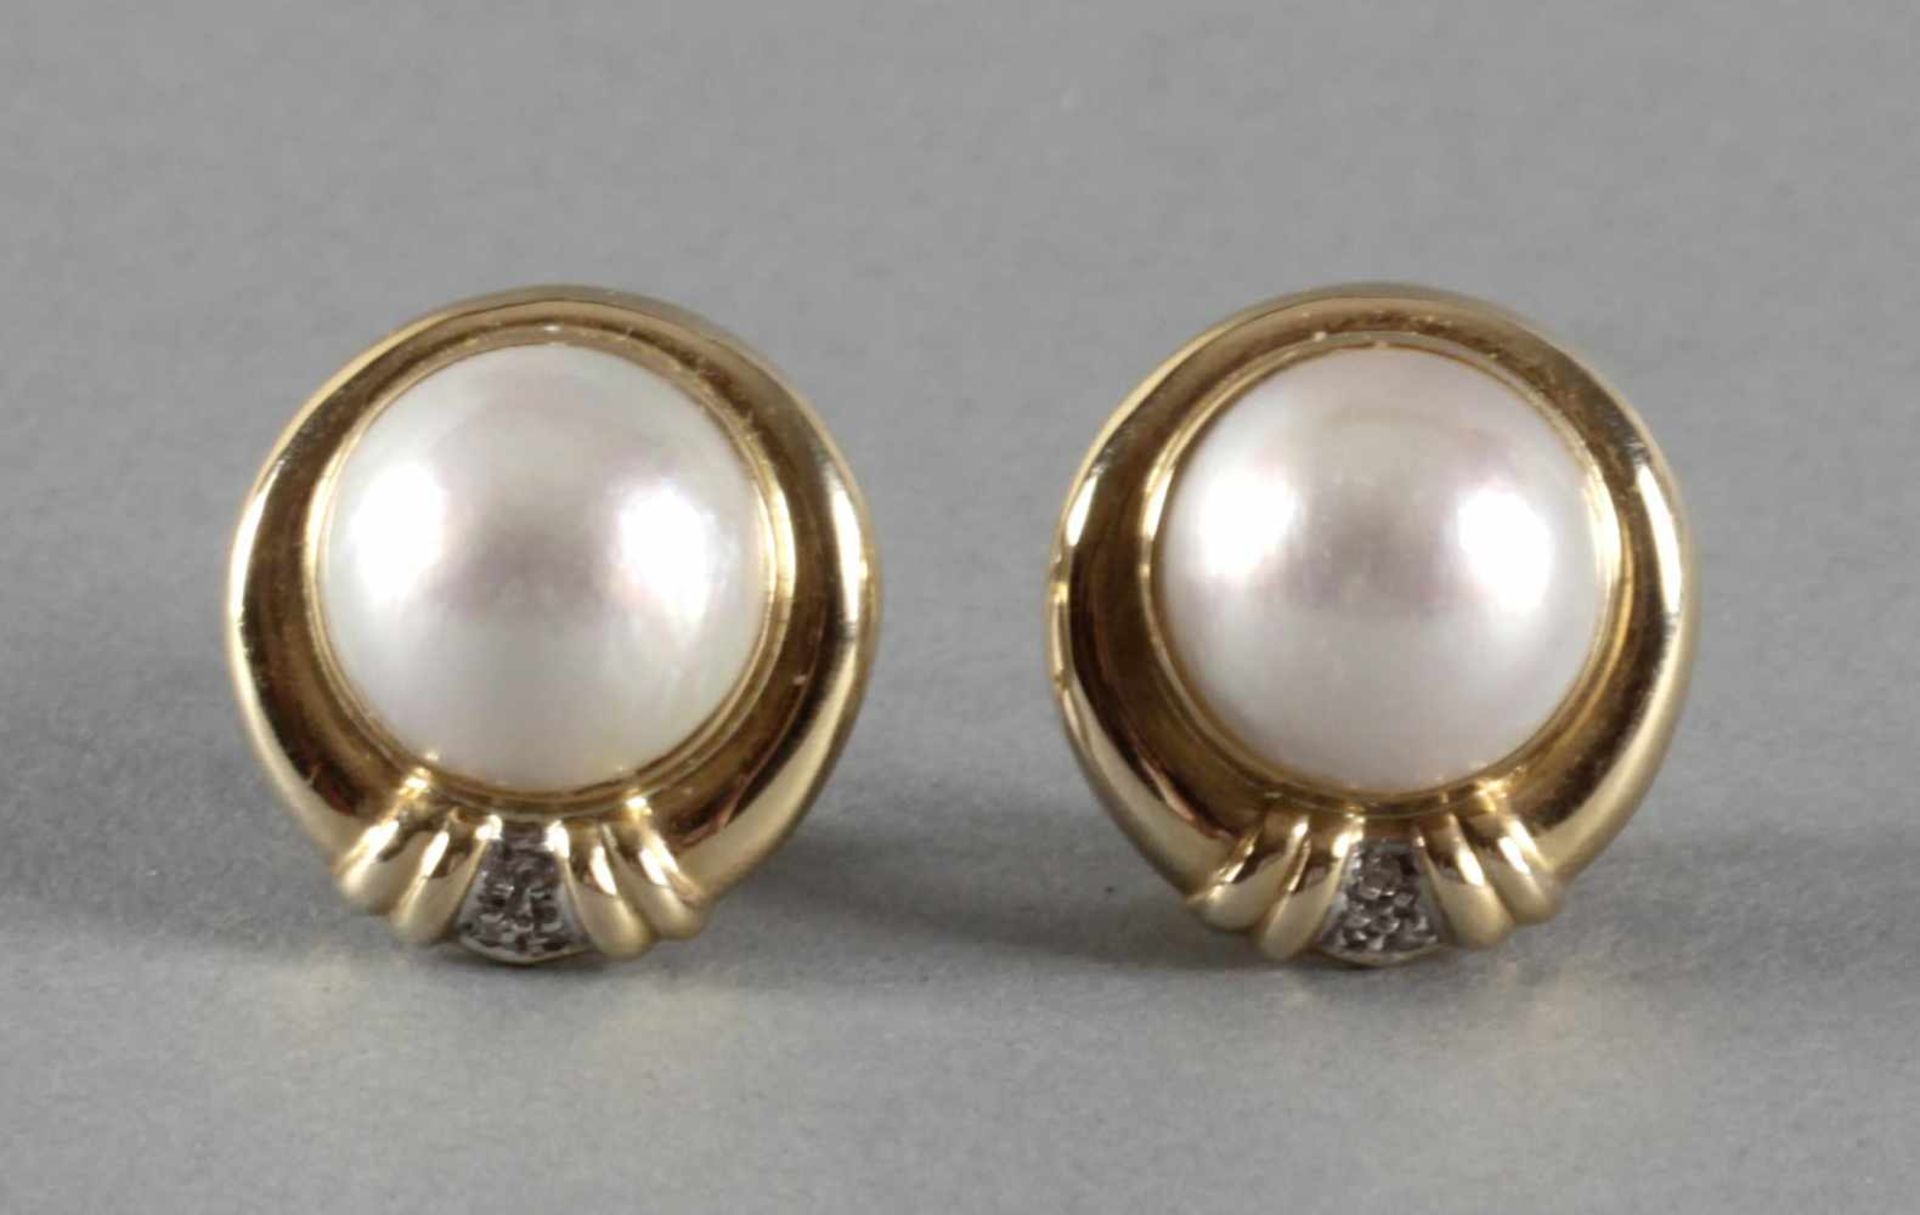 Ohrstecker mit Perlen und Diamanten, GG 585, 2. H. 20. Jh.die halbkugelförmigen Mabé-Perlen in